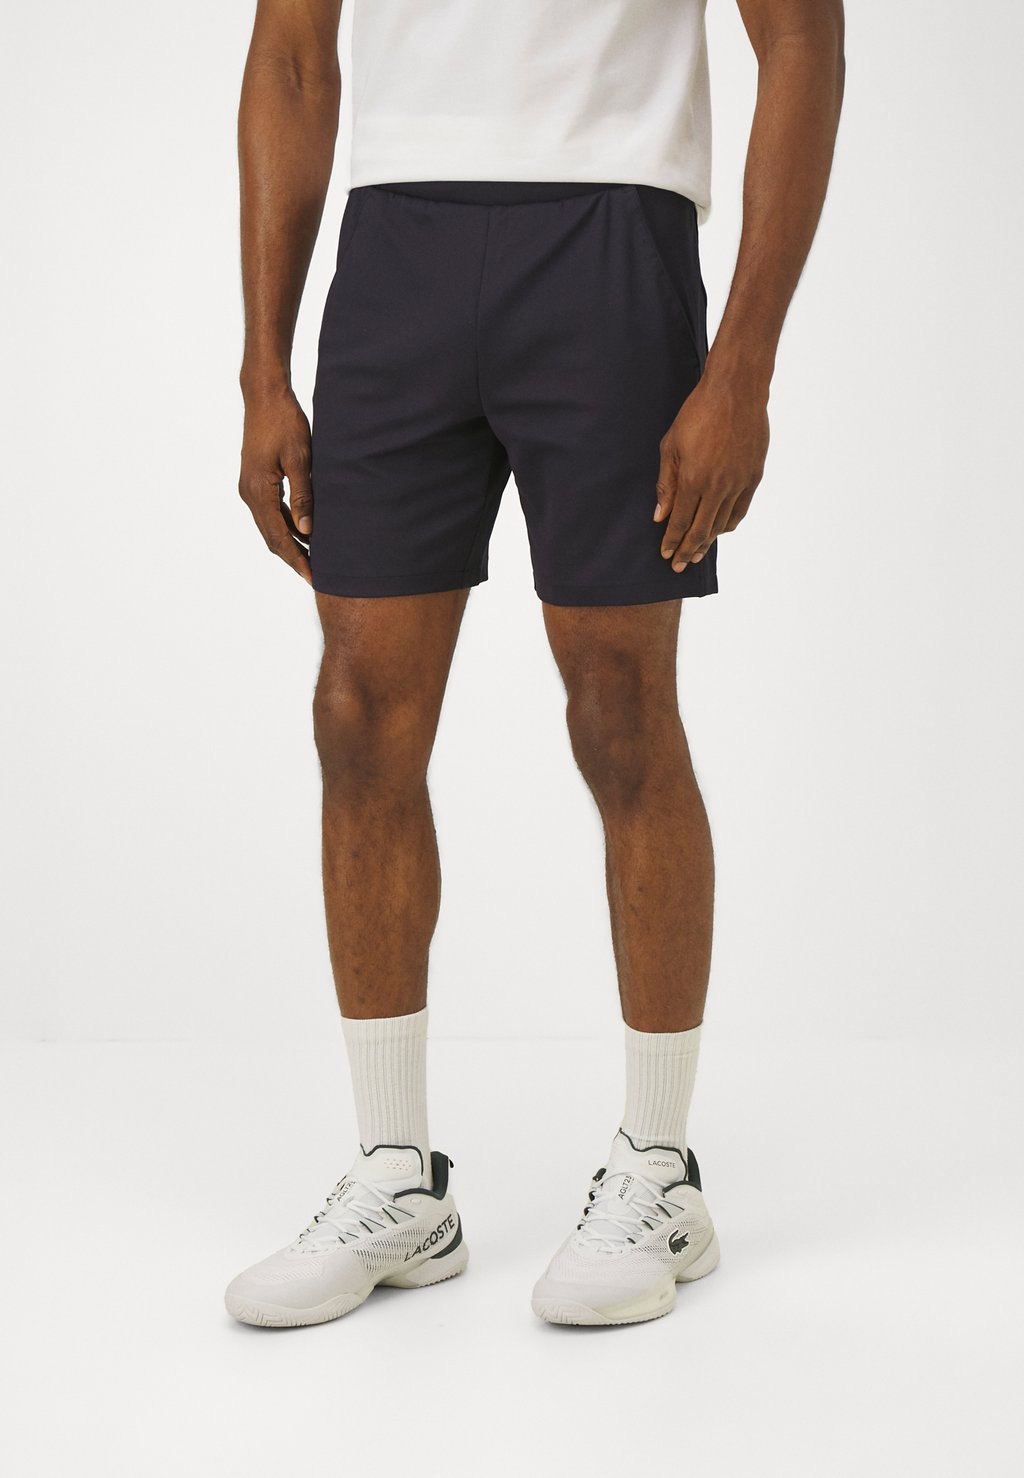 Спортивные шорты Tennis Shorts Heritage Lacoste, цвет bleu marine шорты lacoste sport lined tennis shorts цвет navy blue